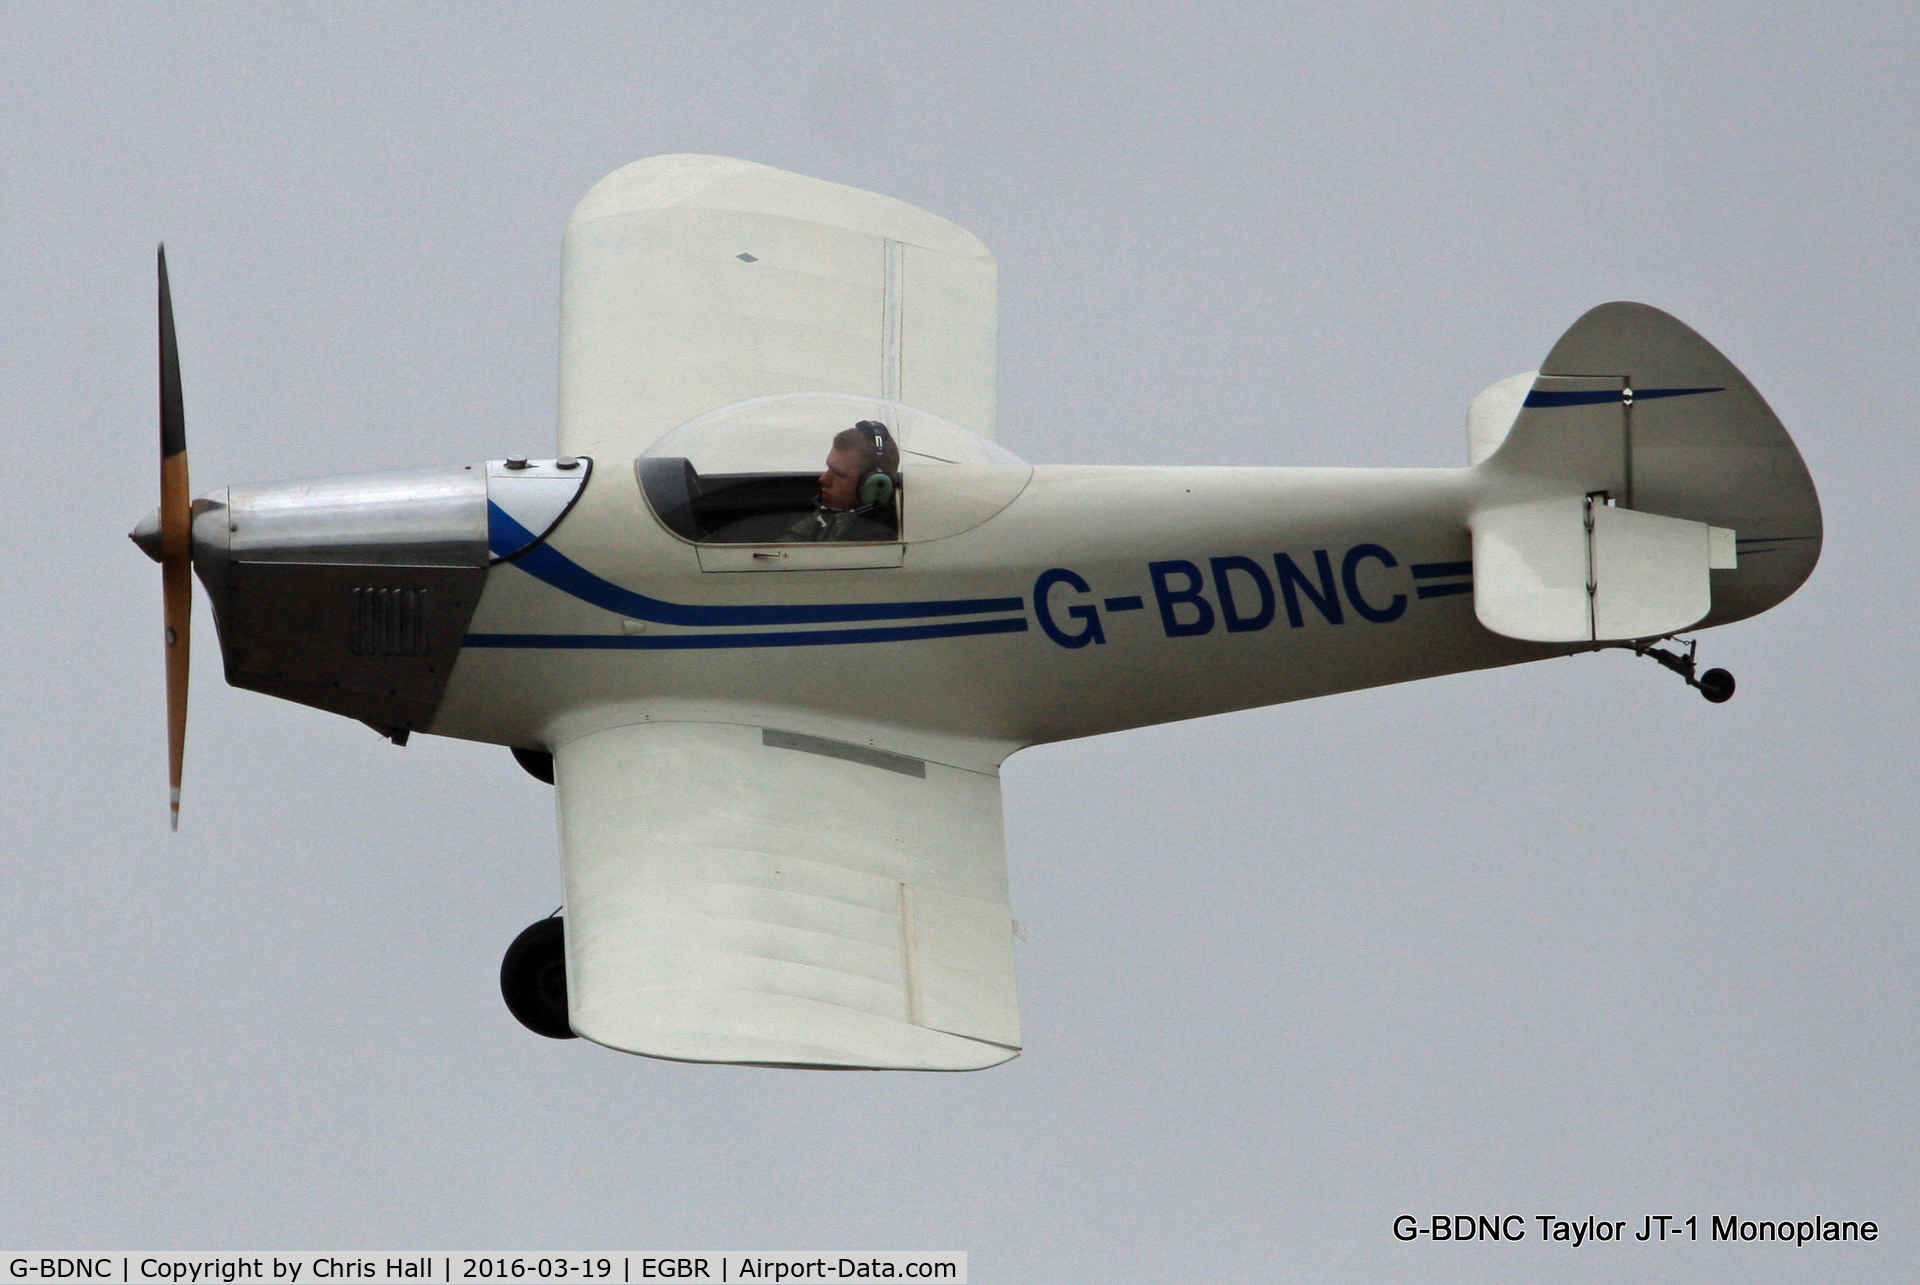 G-BDNC, 1984 Taylor JT-1 Monoplane C/N PFA 1454, at Breighton airfield